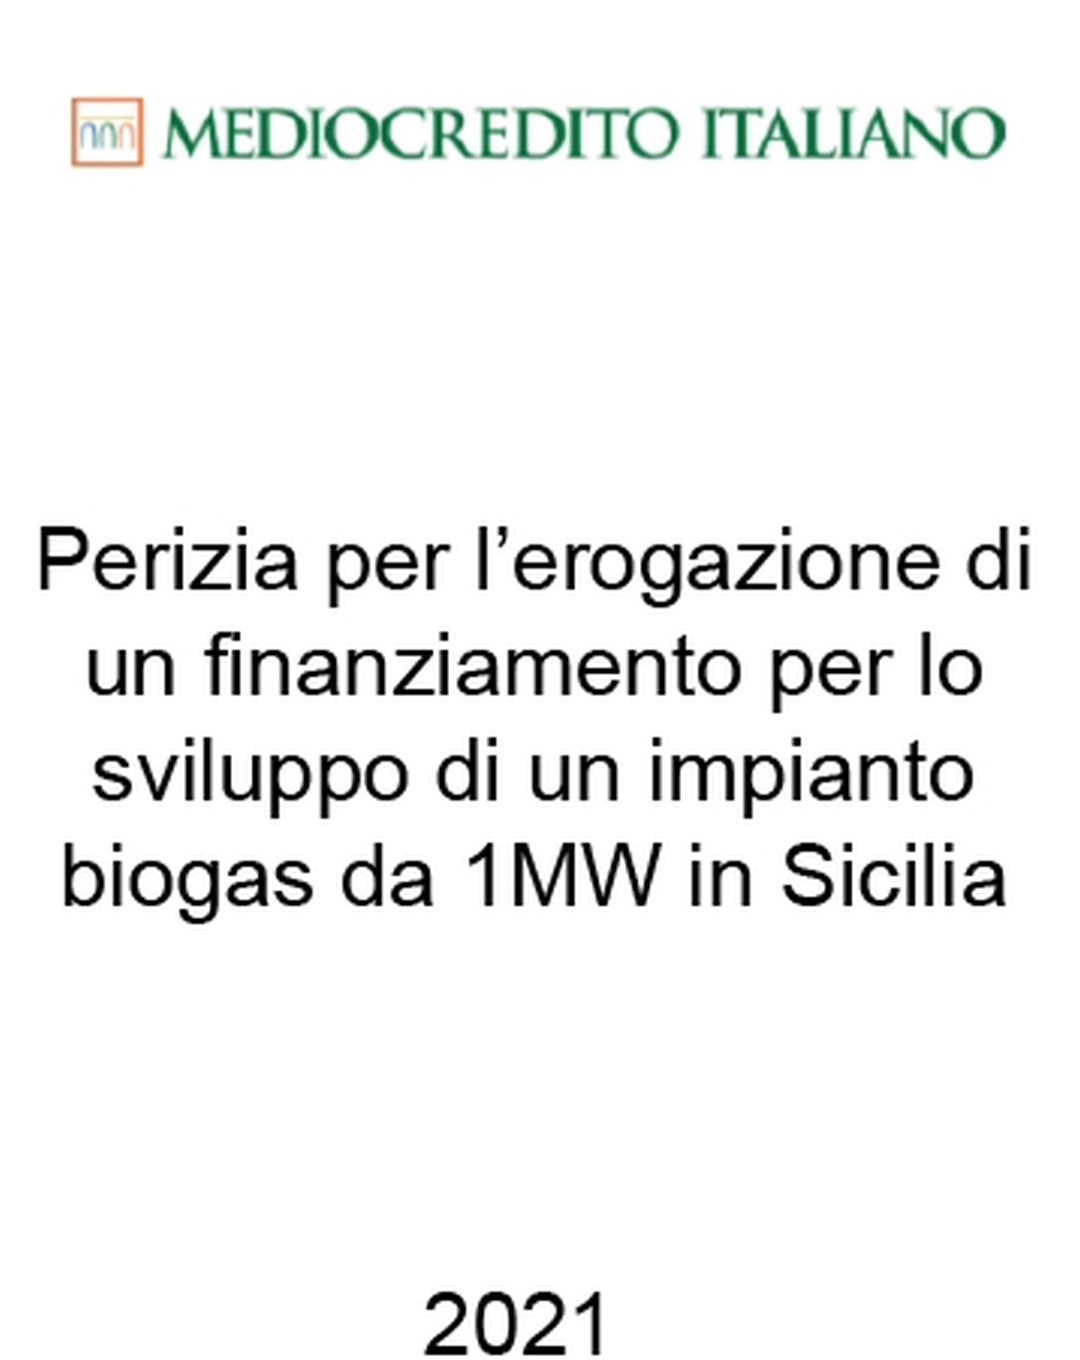 Consulente di Mediocredito Italiano (Gruppo Intesa Sanpaolo) nel finanziamento di un impianto di biogas da 1 MW in Sicilia. Ha agito in qualità di consulente della Banca. Incarico completato nel 2021